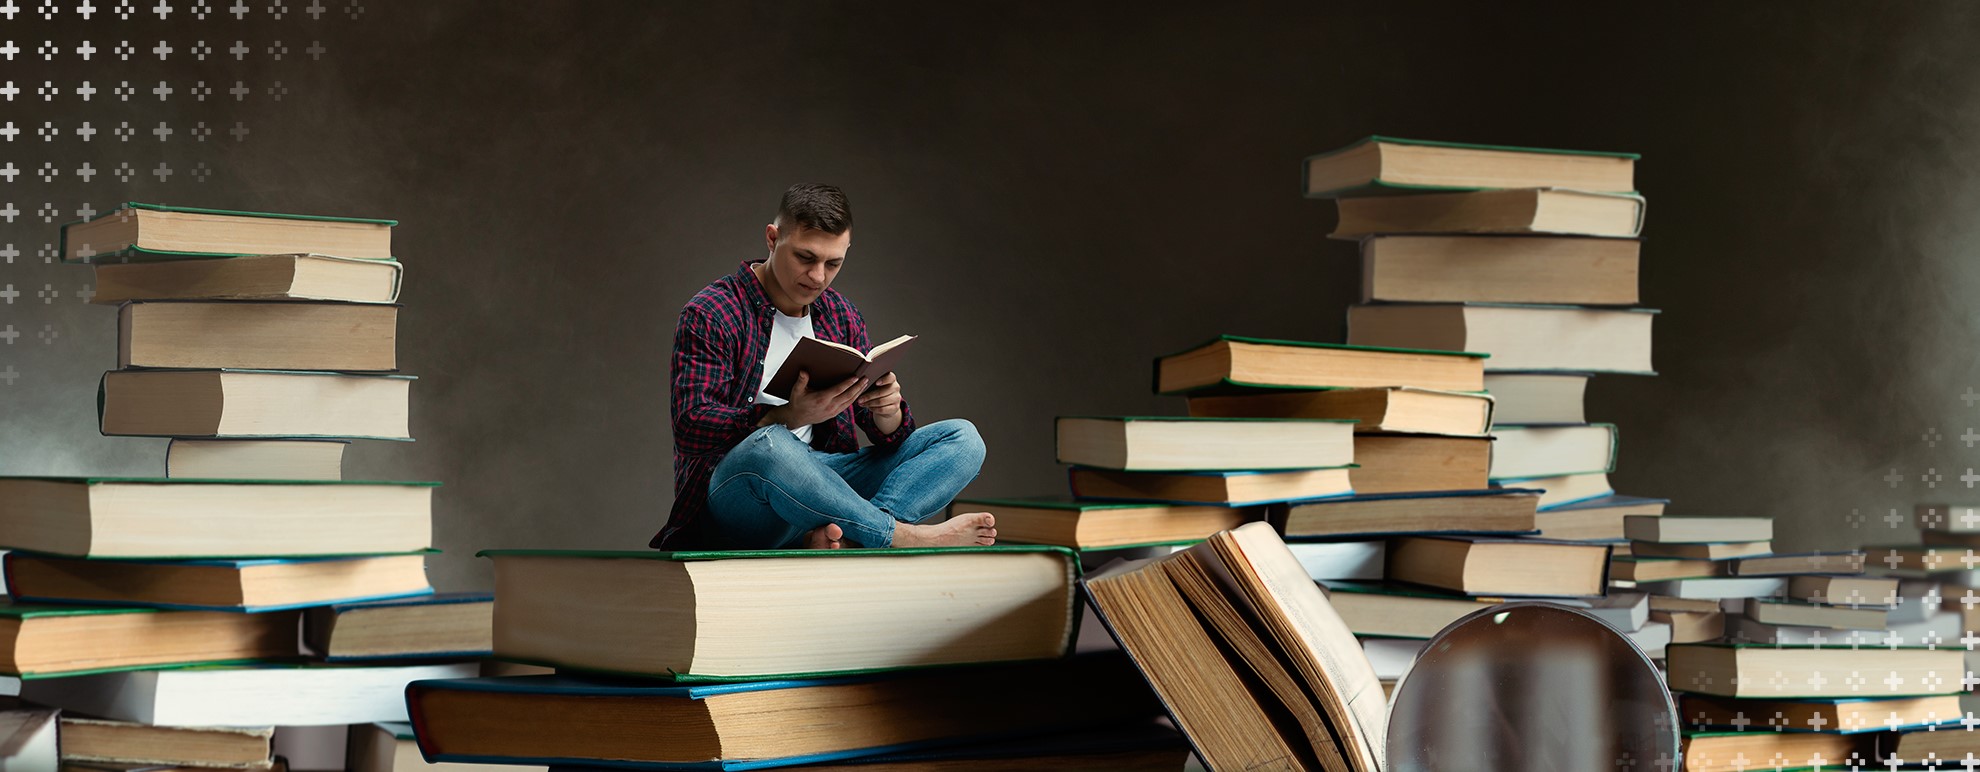 tipos de textos - imagem de um homem sentado sobre um livro, enquanto lê um livro